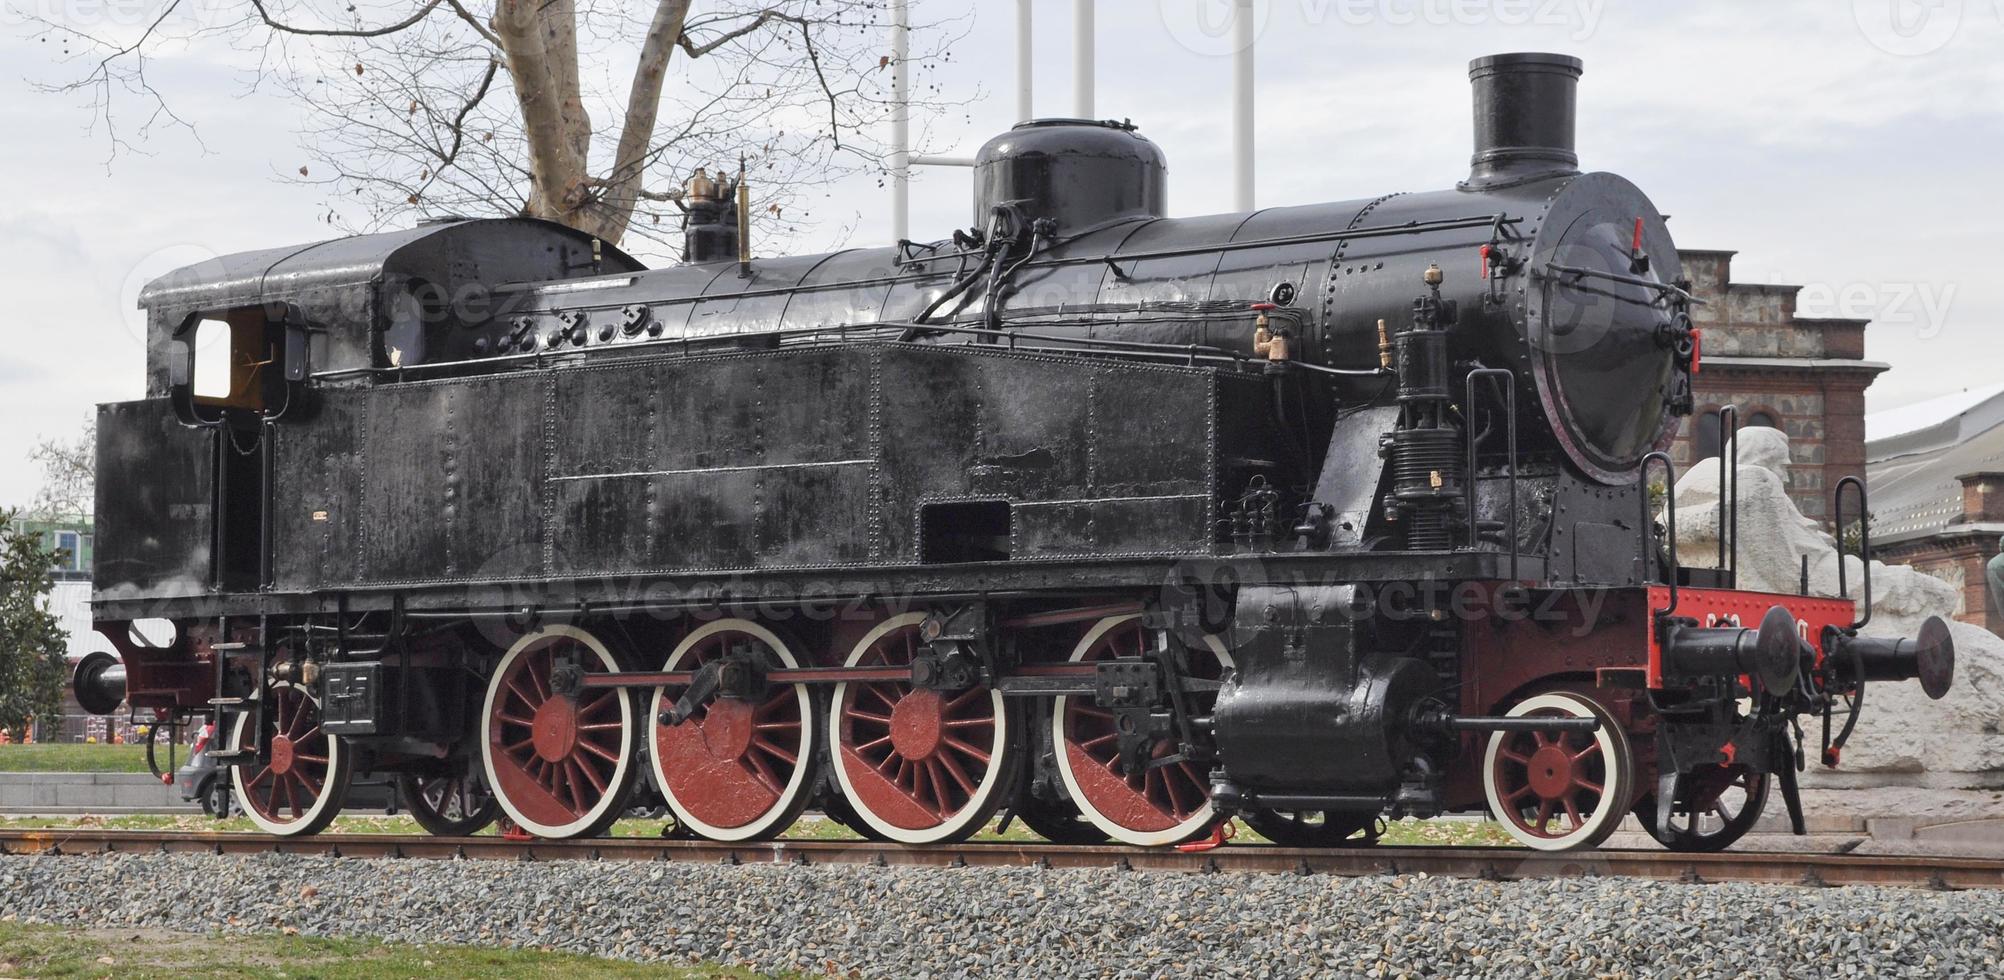 detalhe do antigo veículo locomotiva de trem a vapor foto